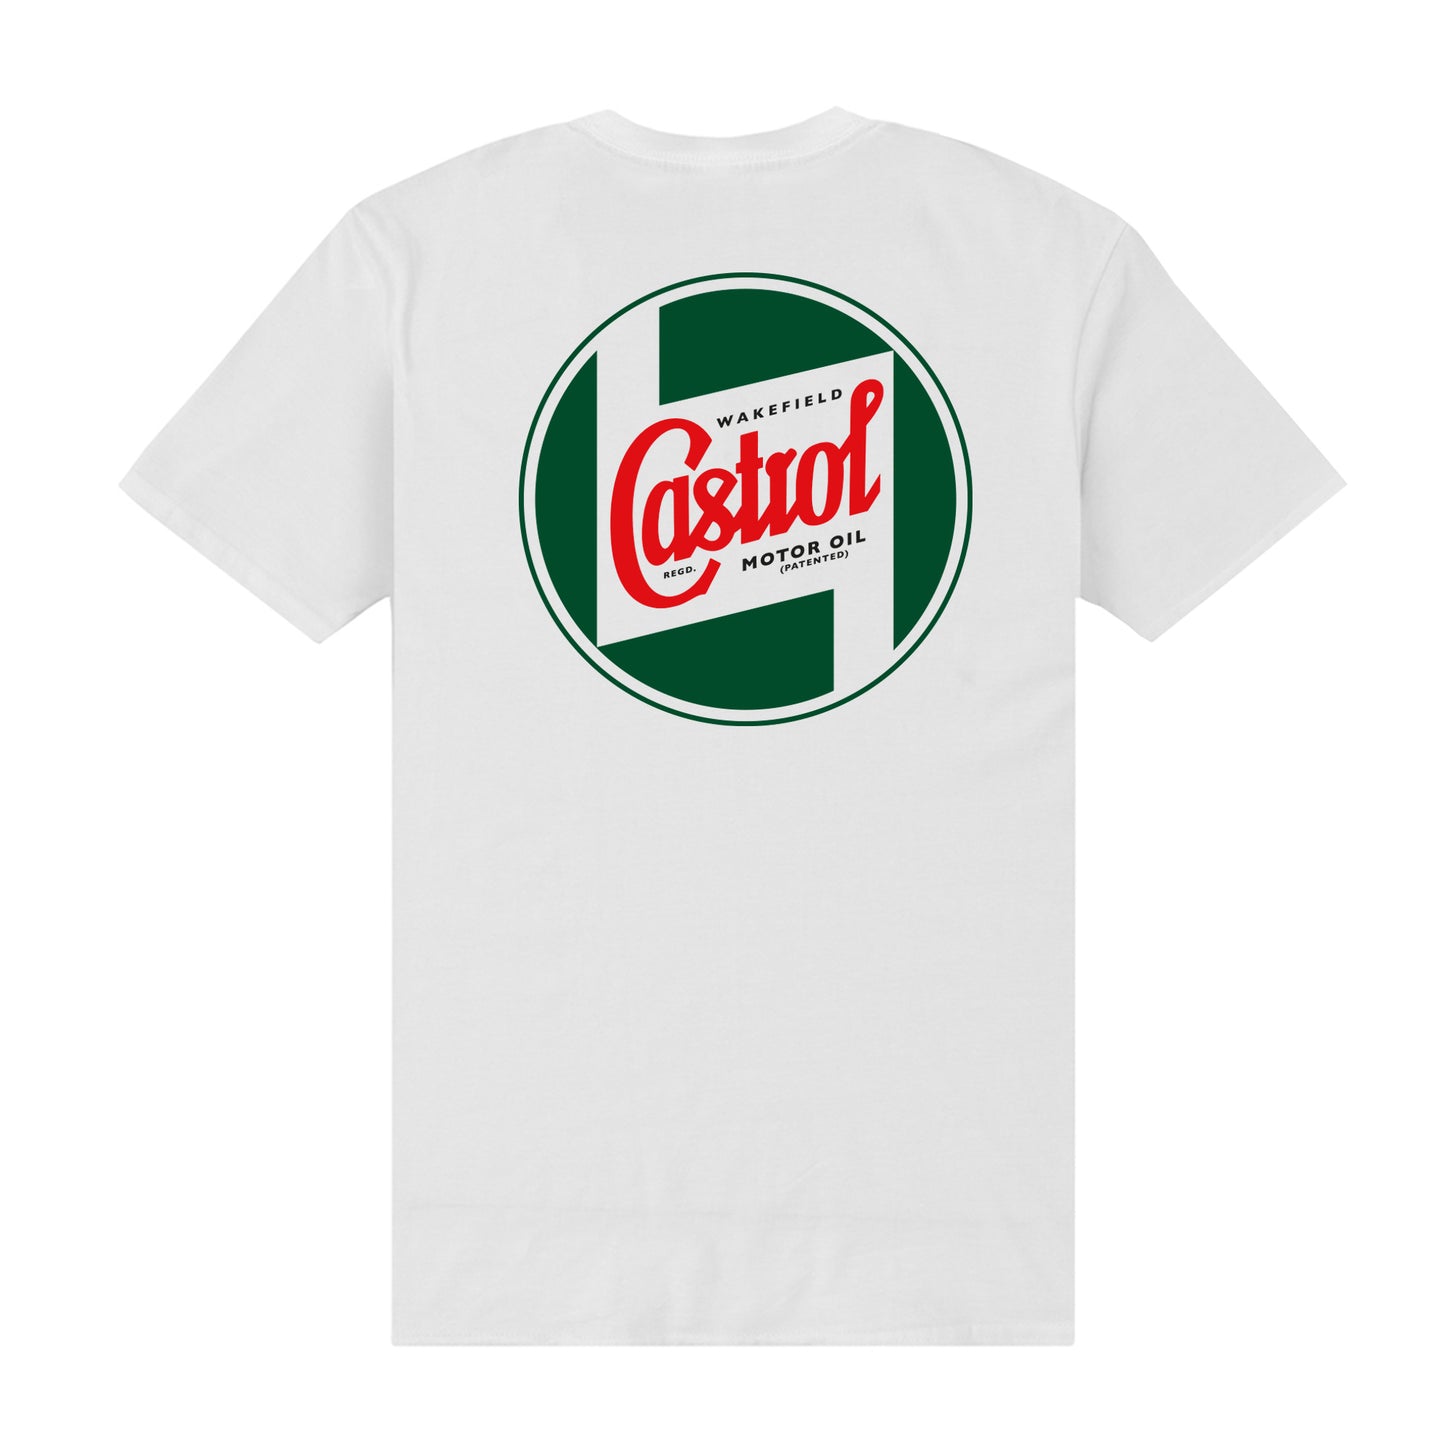 Castrol Wakefield T-Shirt